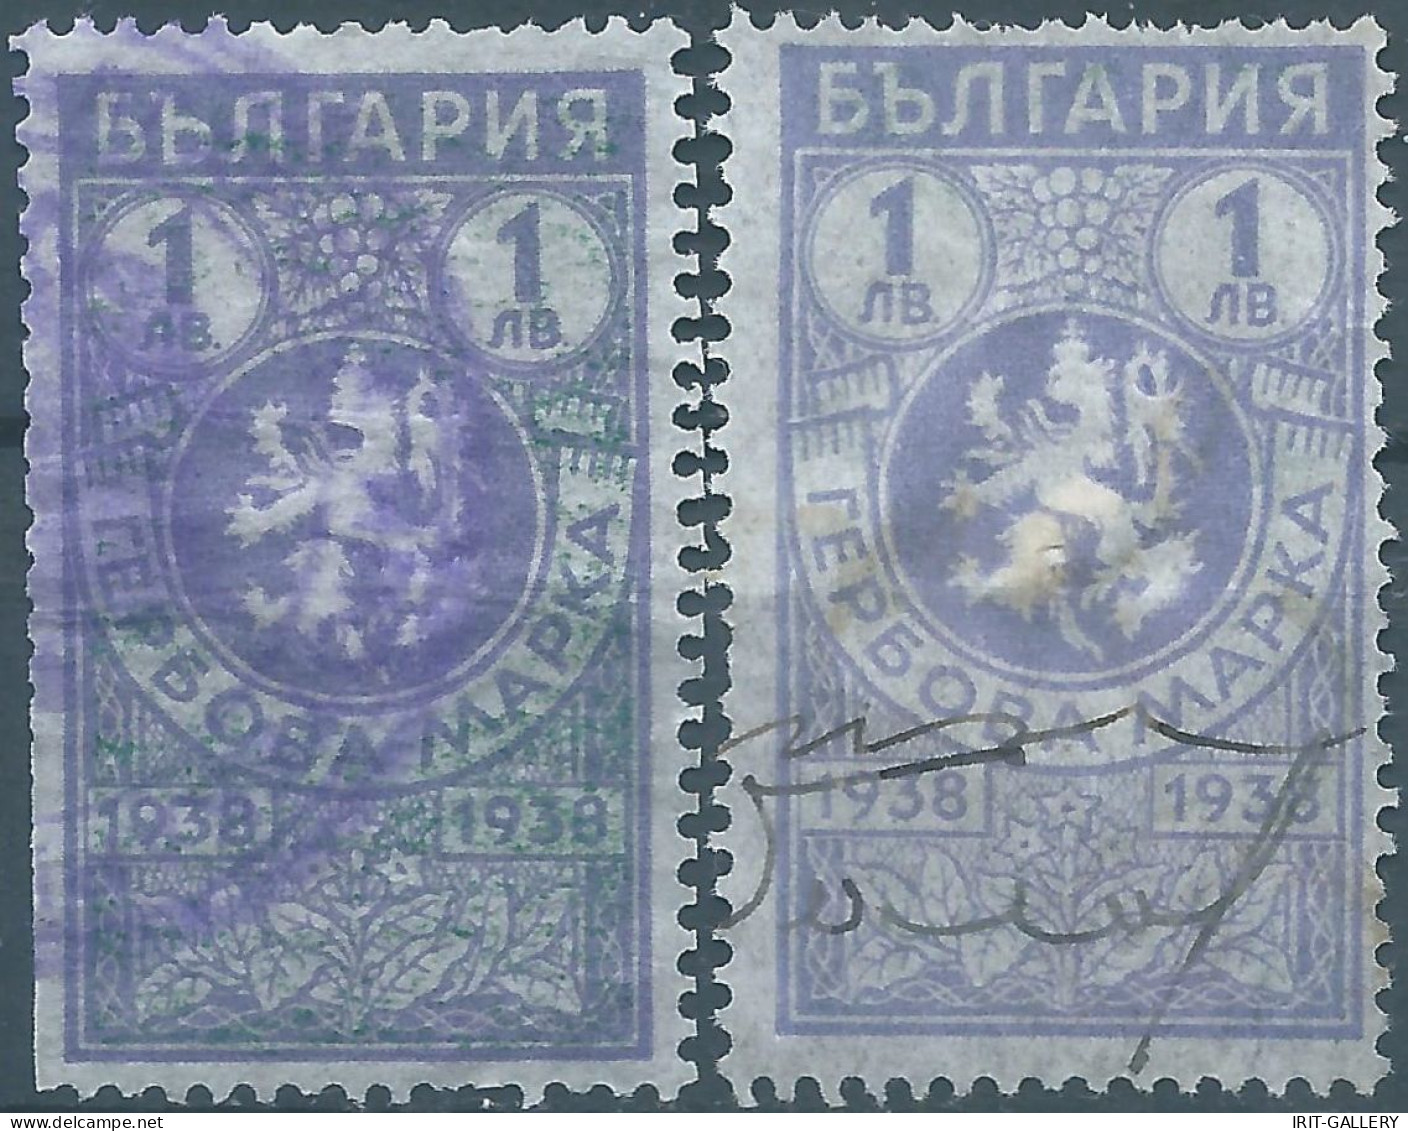 Bulgaria - Bulgarien - Bulgare,1938 Revenue Stamps Tax Fiscal,Used - Timbres De Service